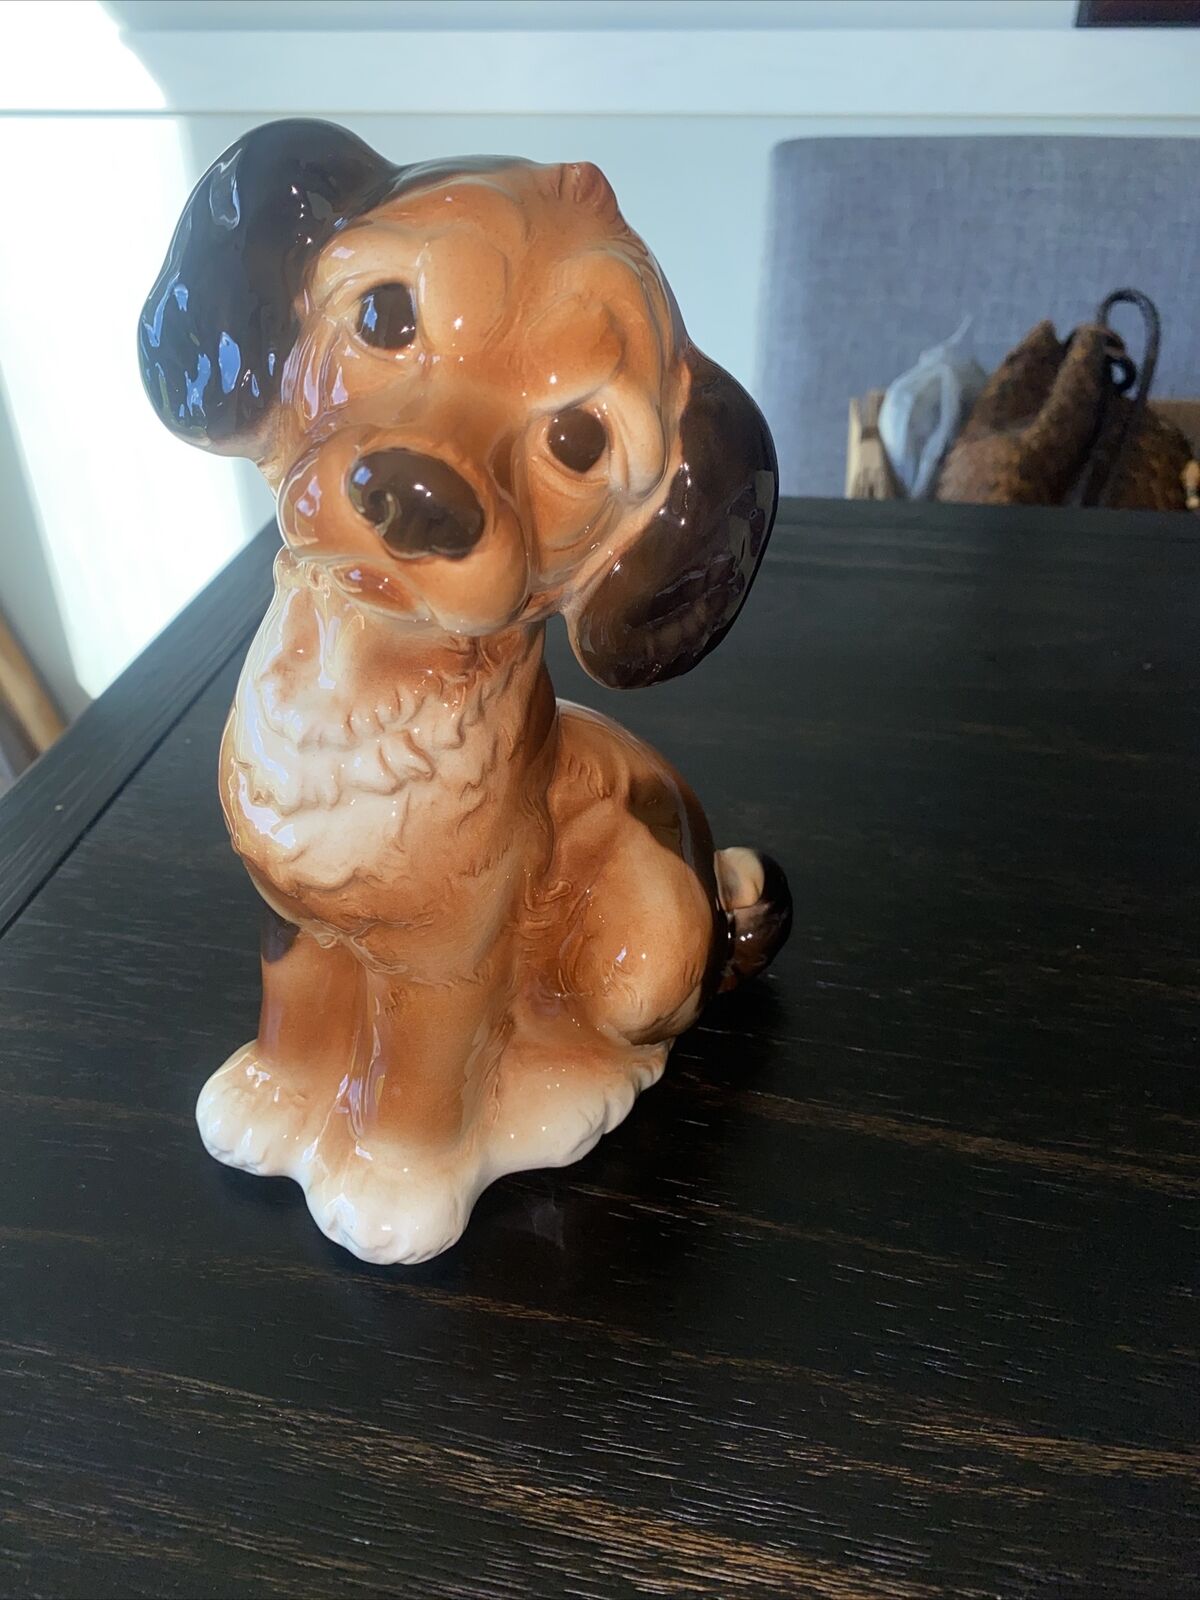 Royal Copley Puppy Dog Figurine Vintage 1950s